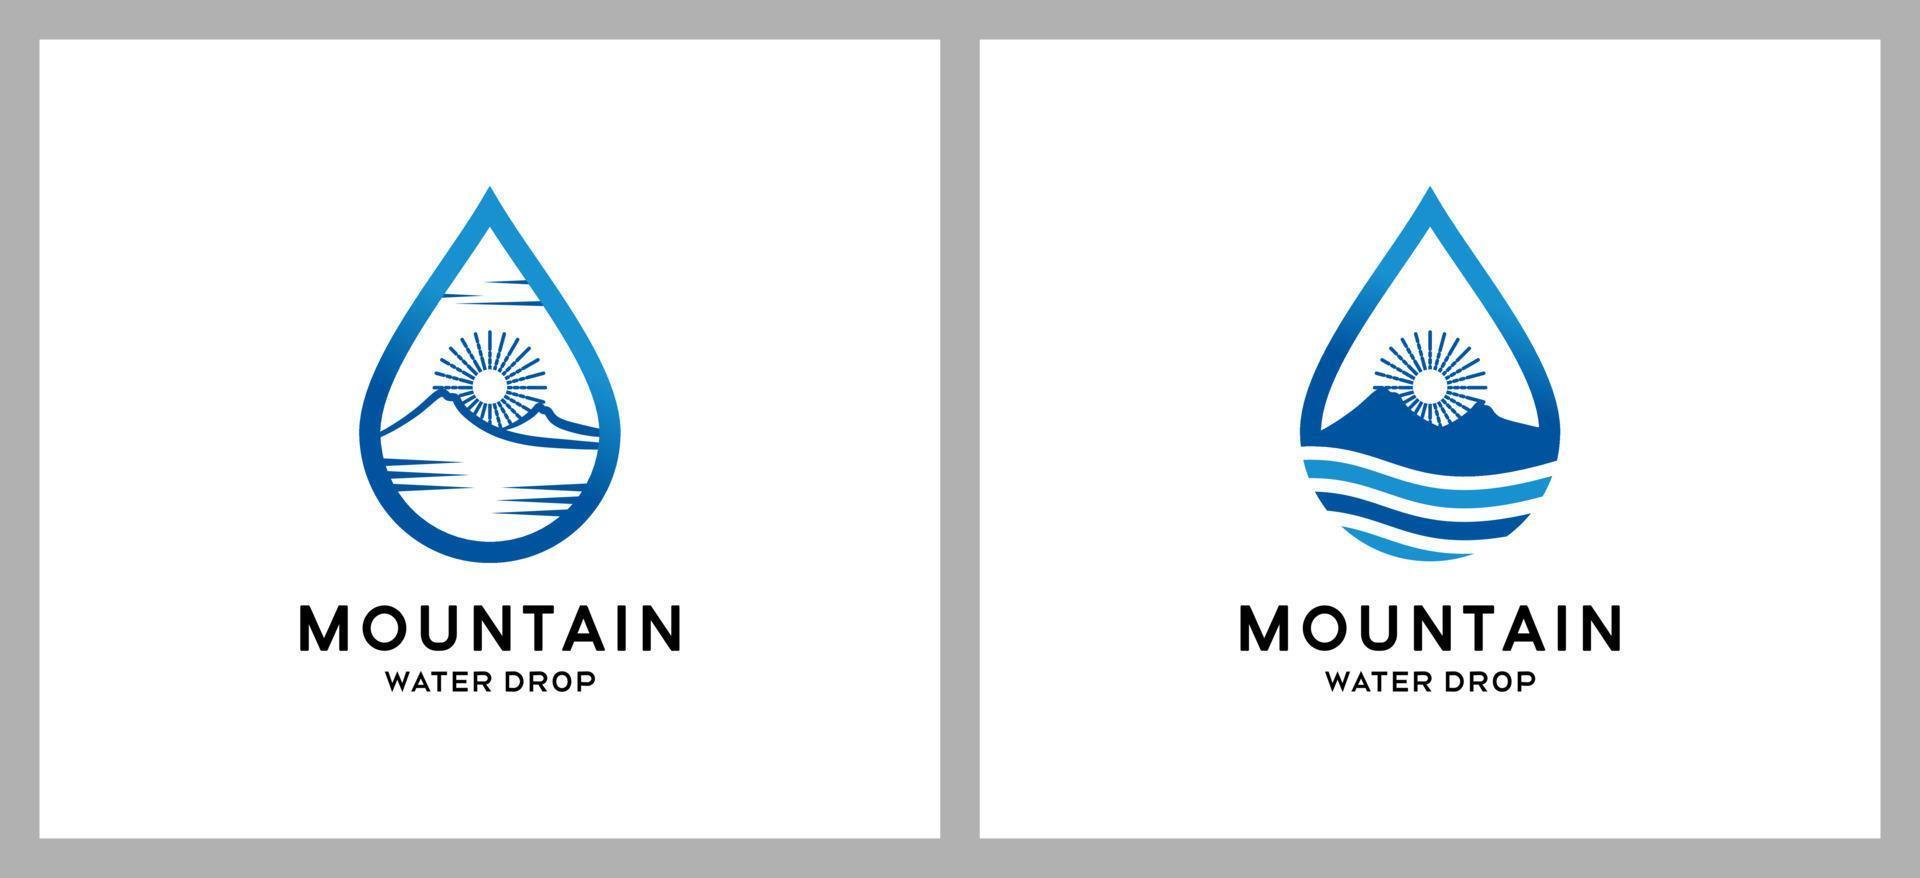 Mountain logo design with creative water drops concept vector